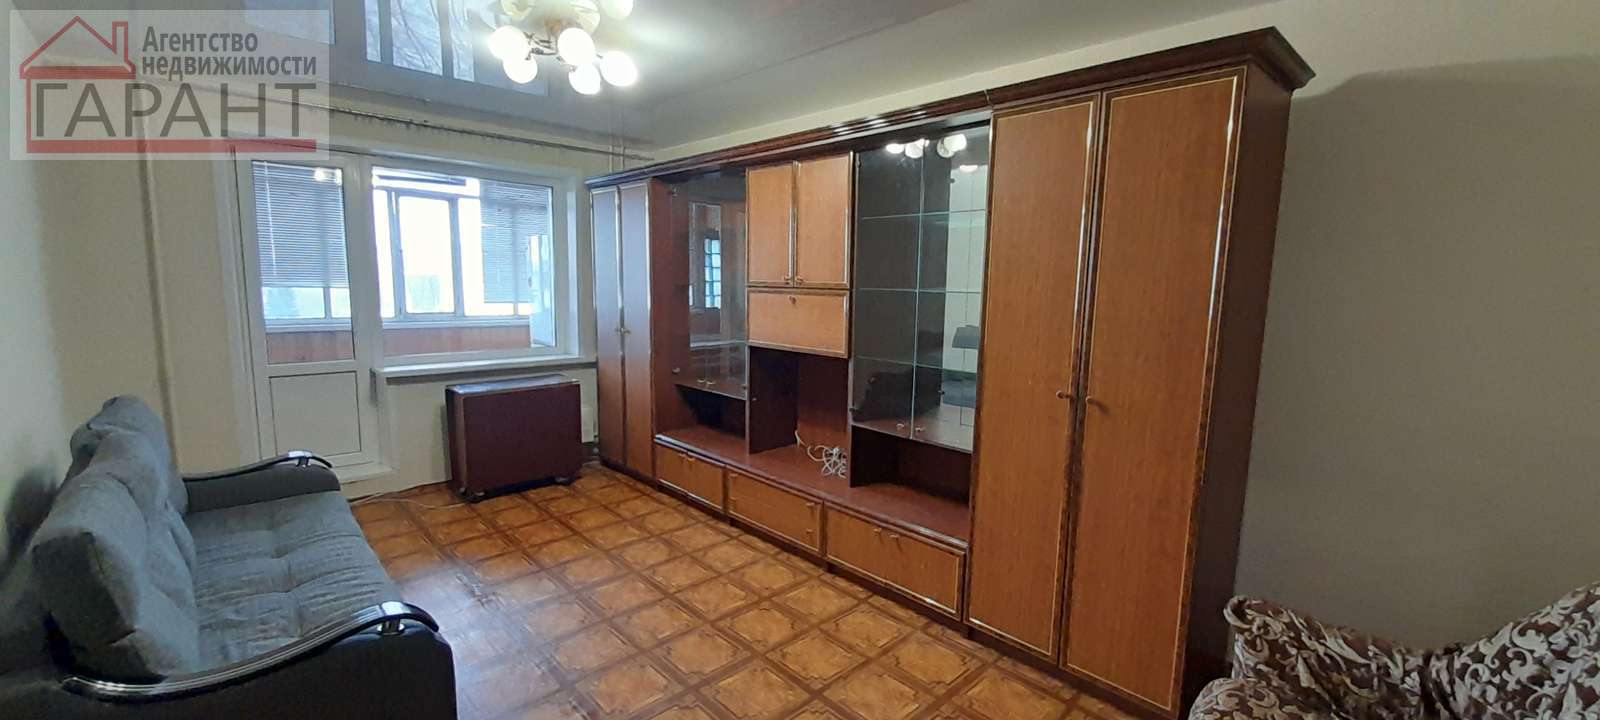 Продажа 2-комнатной квартиры, Самара, Карла Маркса проспект,  243